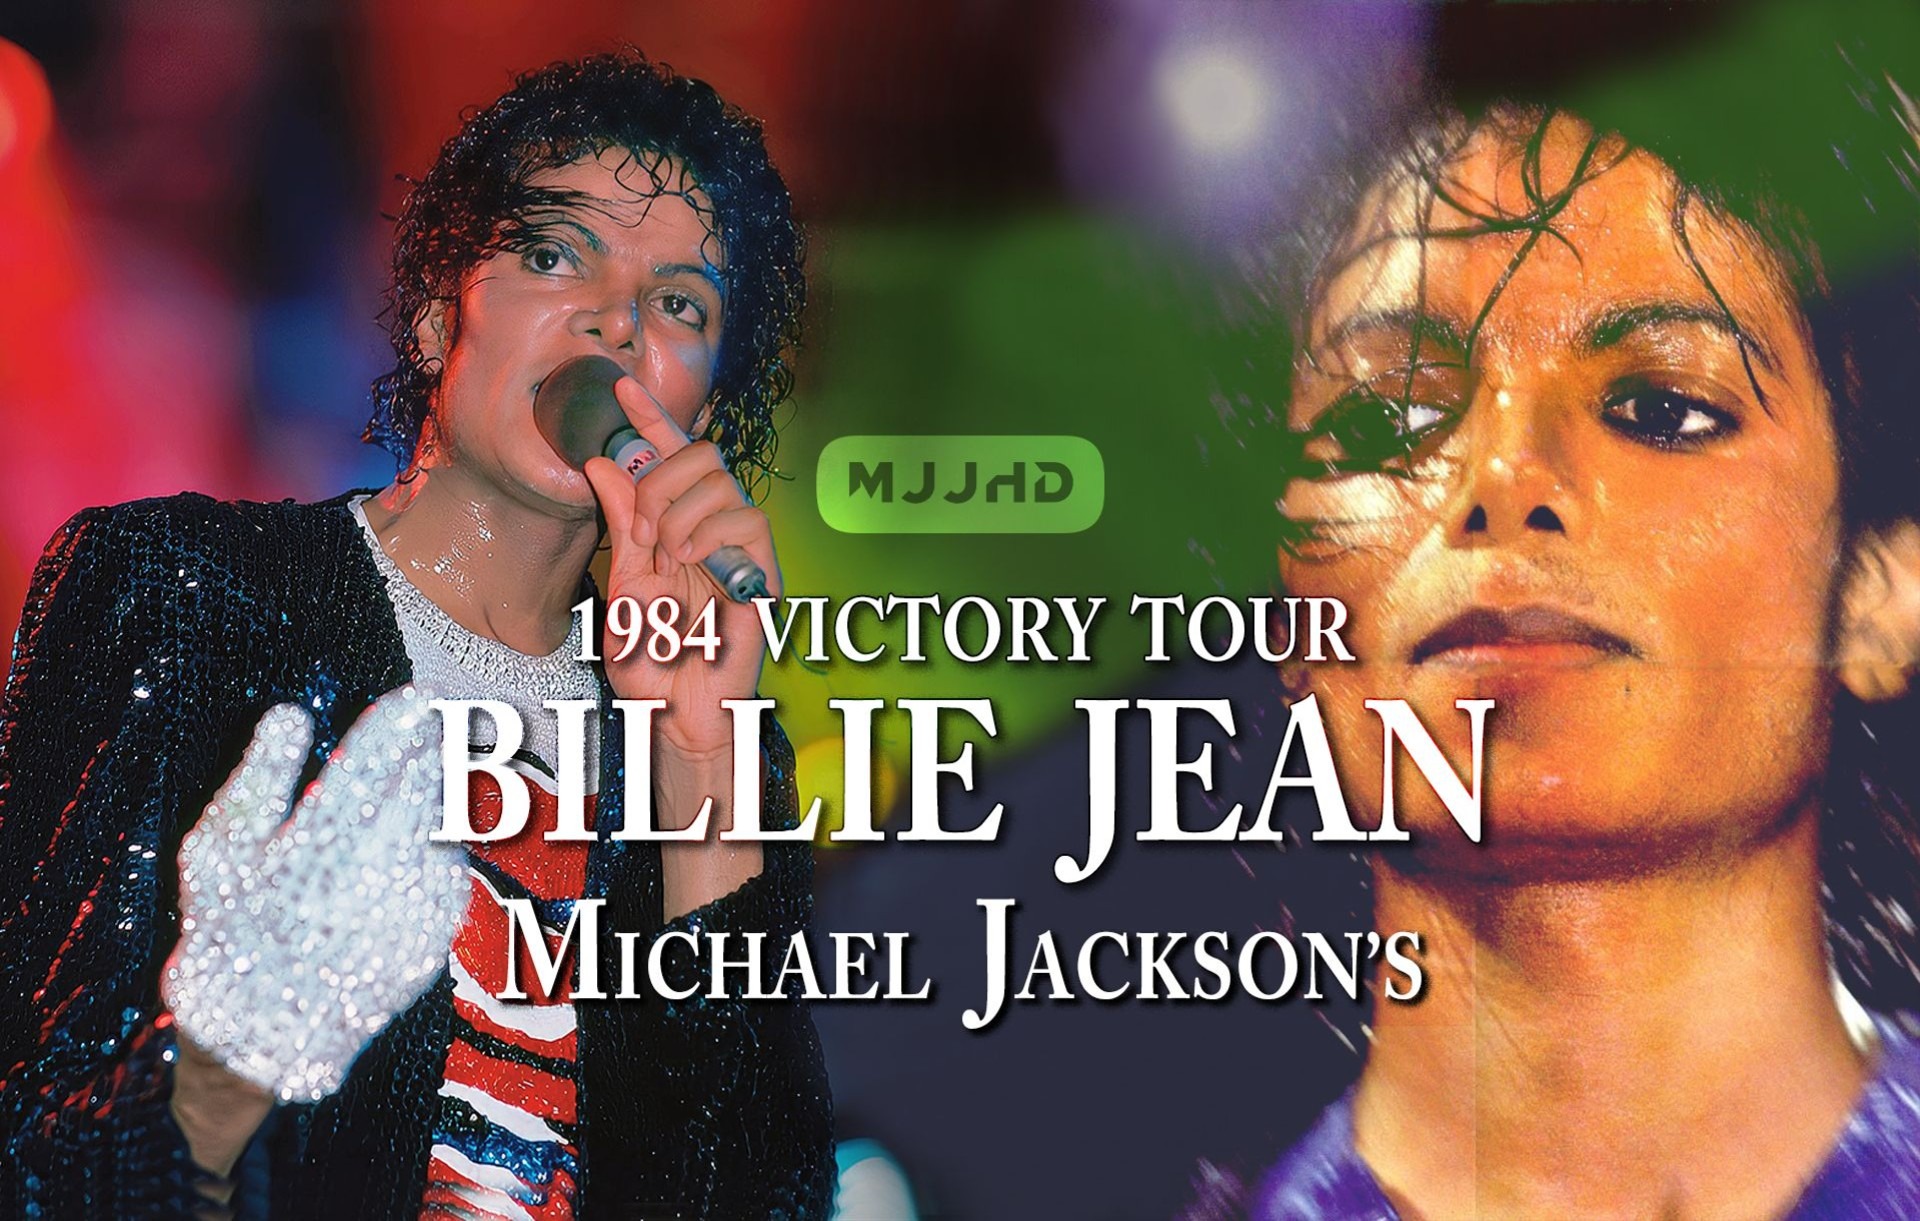 状态极佳【迈克尔杰克逊】全开麦 Billie Jean LIVE版·1984年胜利巡演